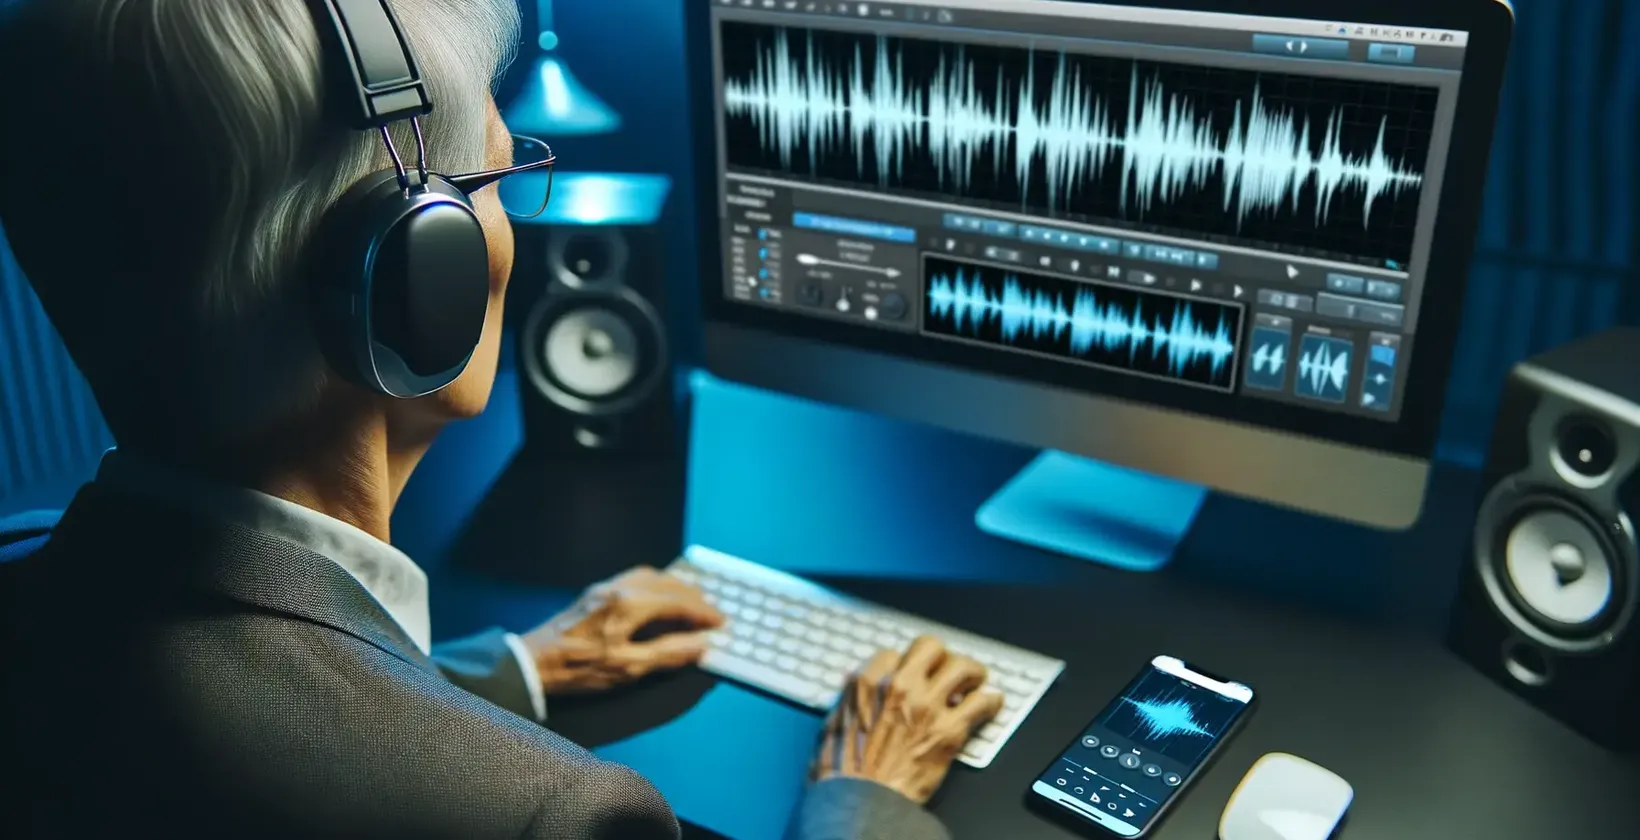 청각 장애인을 위한 오디오-텍스트 변환 장면에서는 헤드폰을 착용한 은발의 노인이 안경을 쓰고 푸른색 조명의 책상에서 작업하는 모습을 보여줍니다.